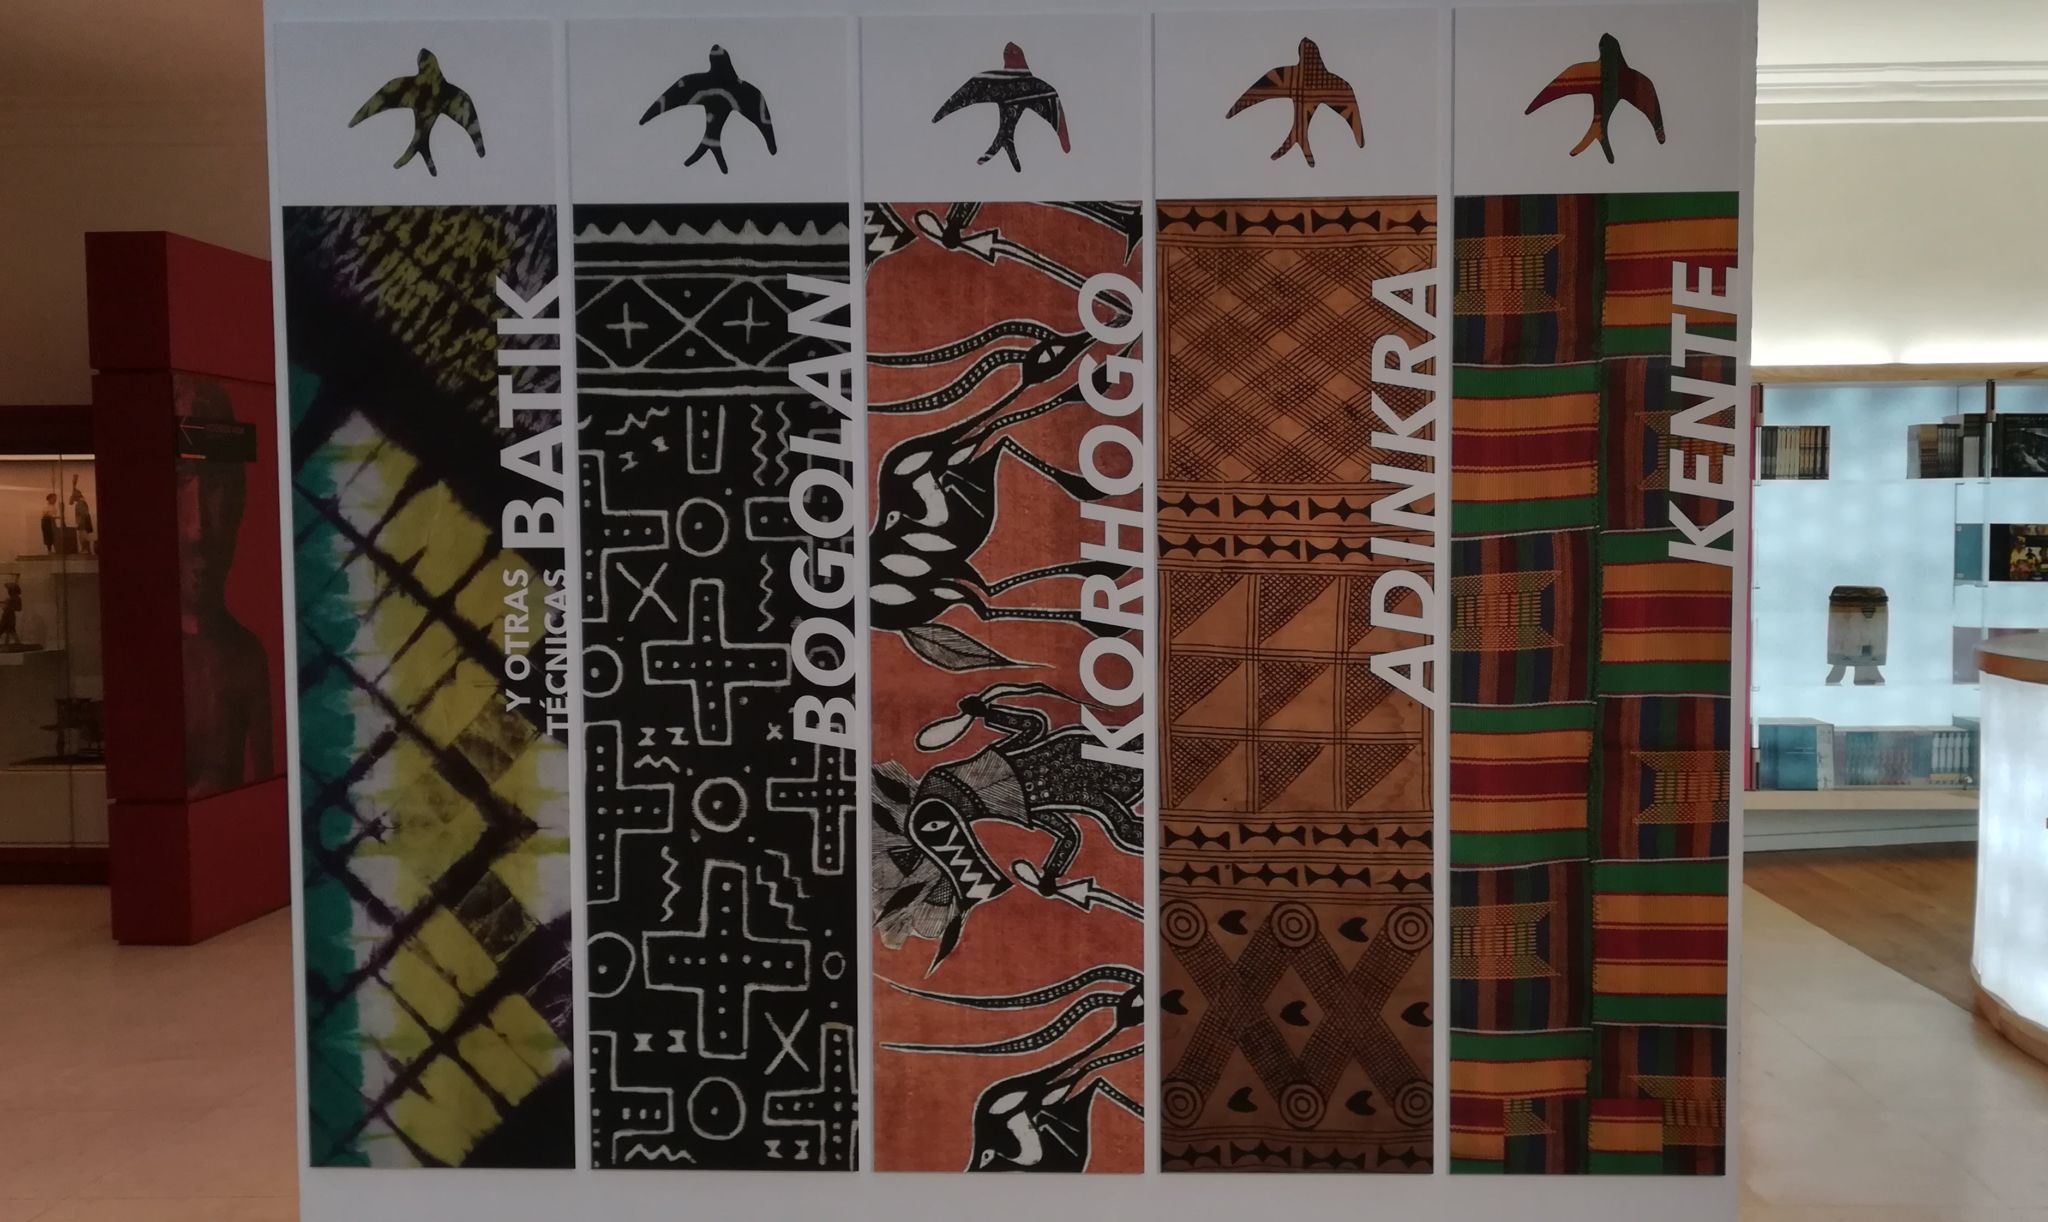 Las cinco técnicas textiles desarrolladas en la exposición “El lenguaje de las telas". kente, adinkra, korhogo, boholan y batik.